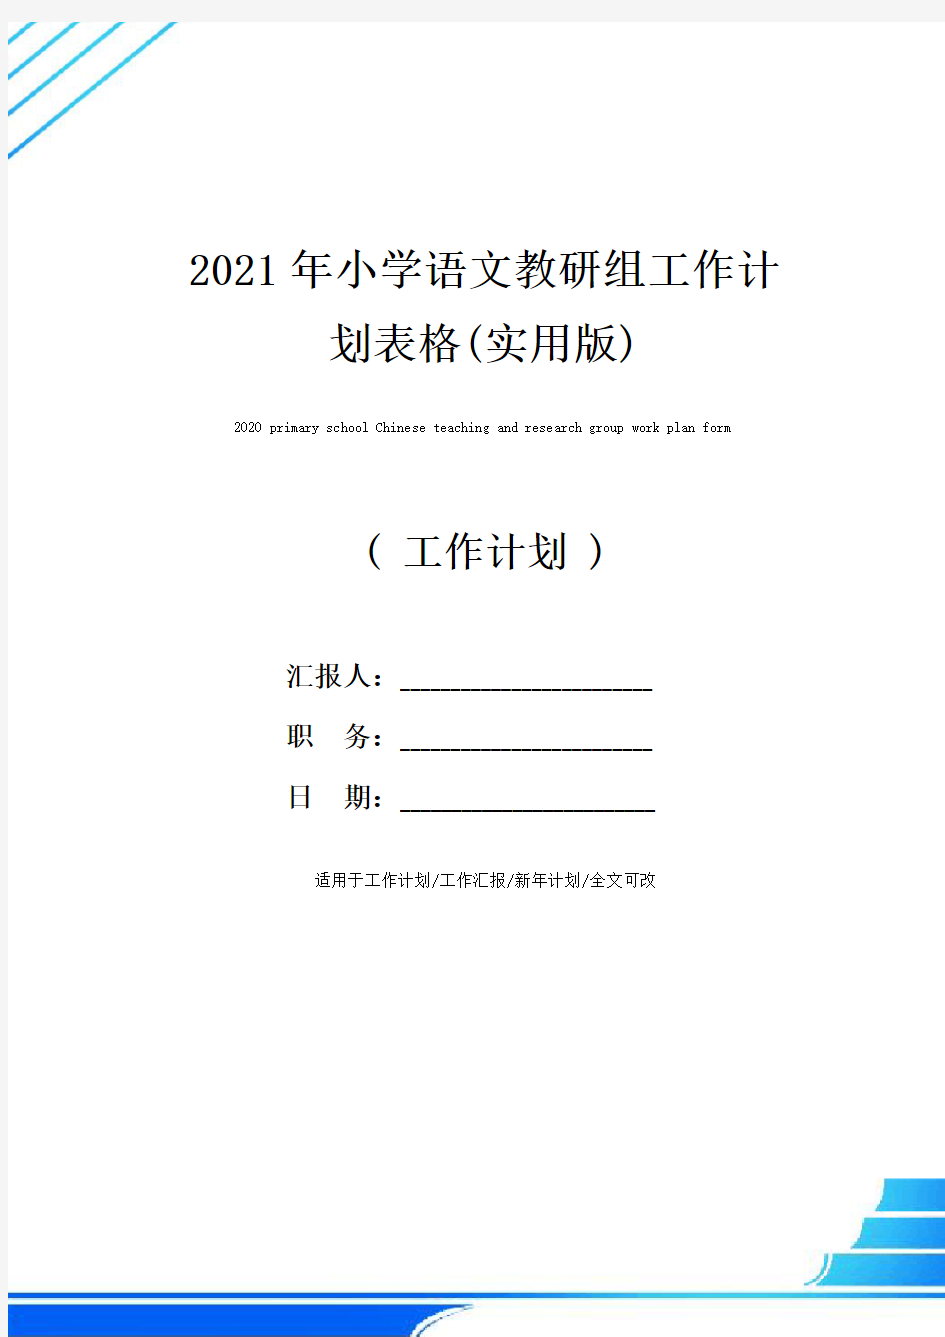 2021年小学语文教研组工作计划表格(实用版)